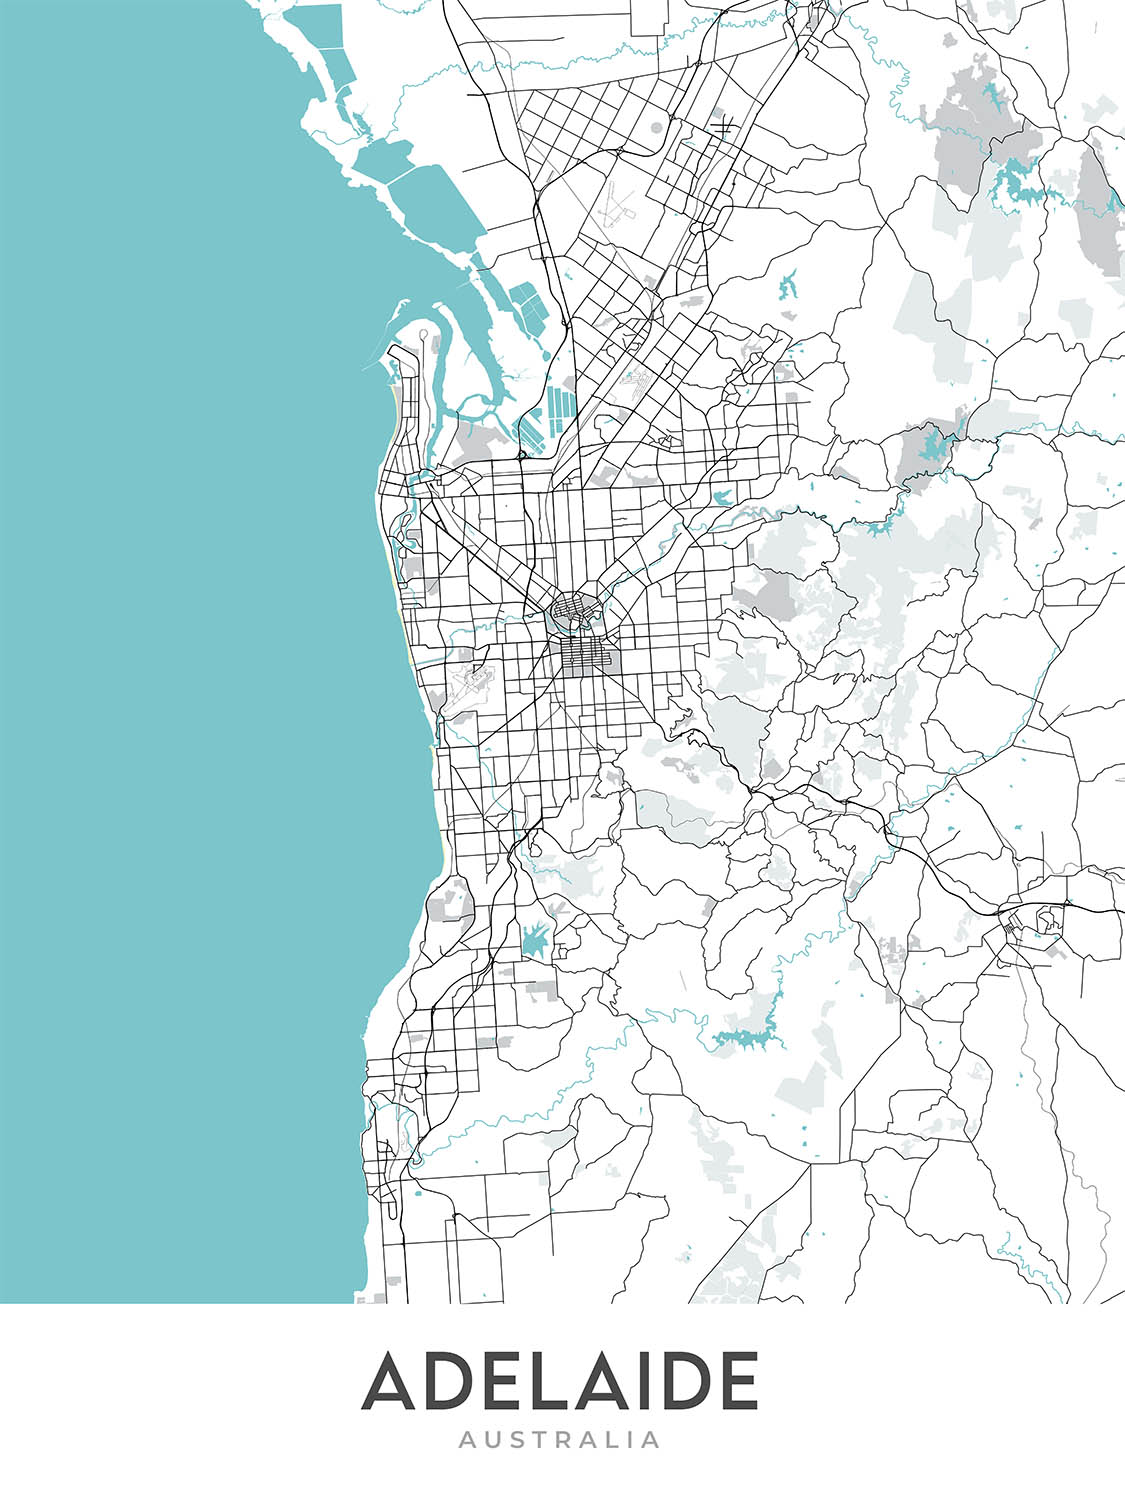 Plan de la ville moderne d'Adélaïde, Australie : CBD, Glenelg, Adelaide Oval, jardins botaniques, zoo d'Adélaïde